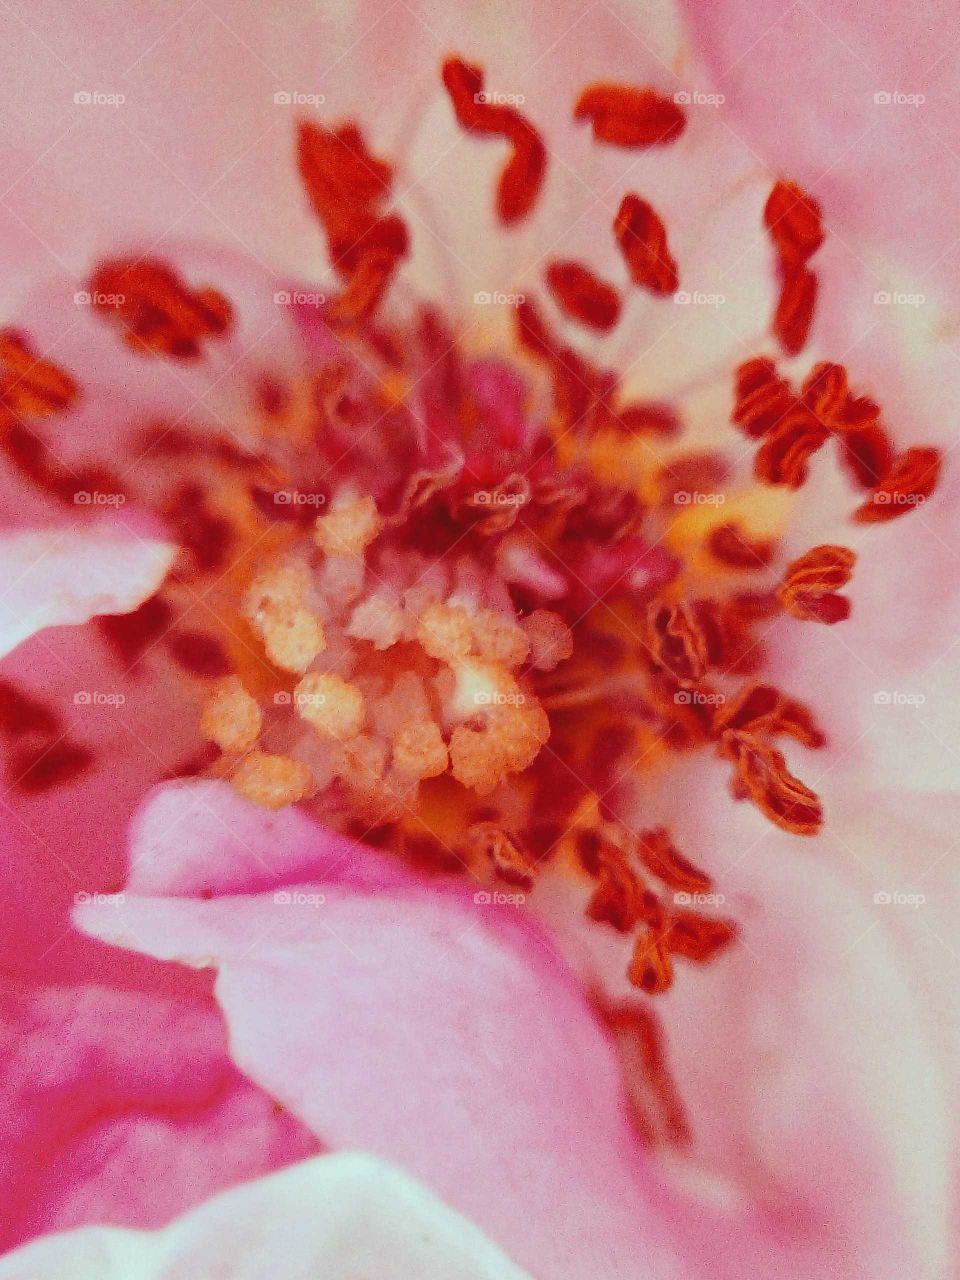 Inside part of the rose flower